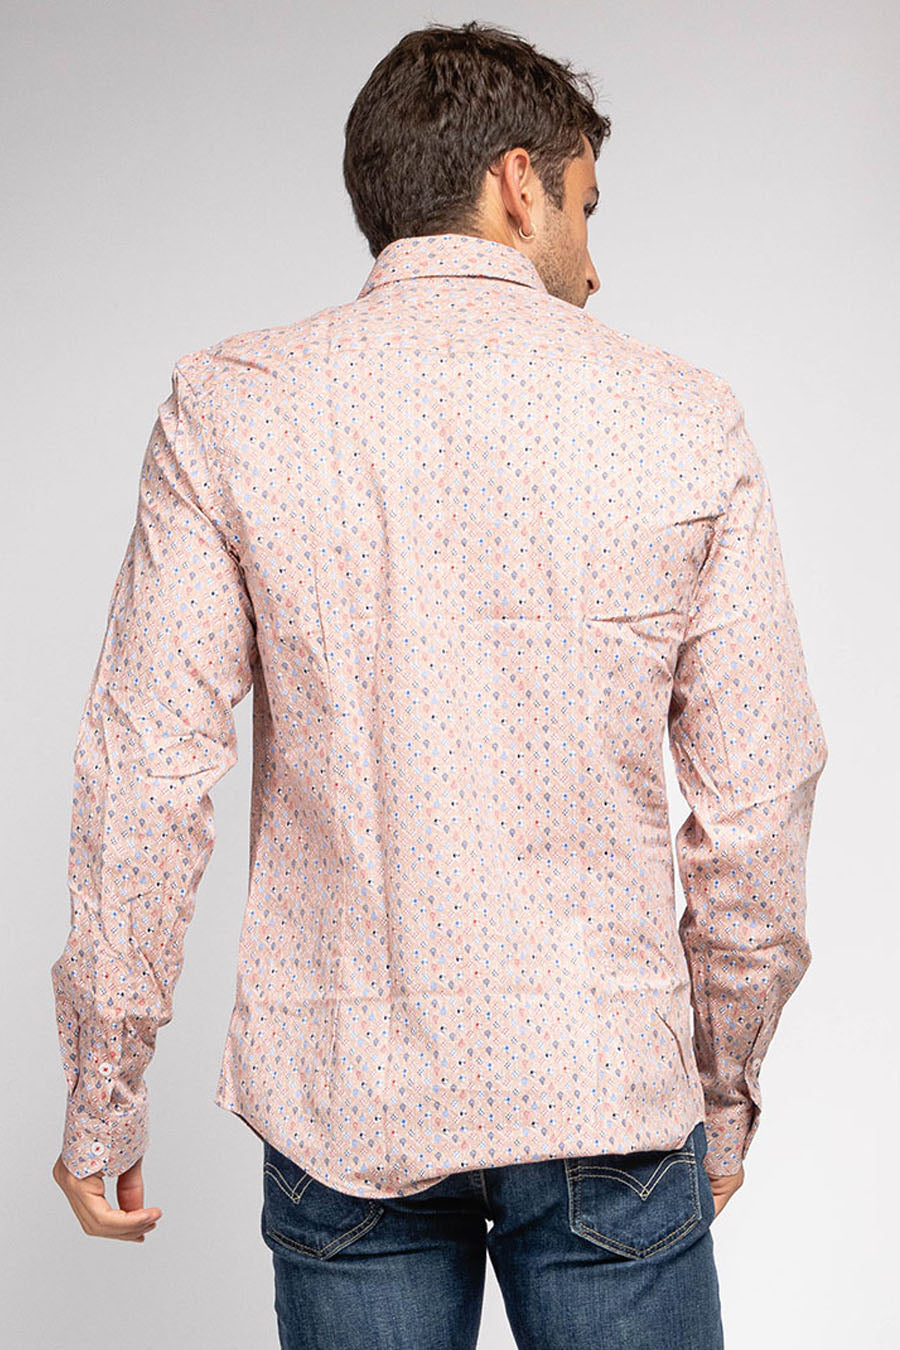 Ανδρικό πουκάμισο Aldwyn, Ροζ 4